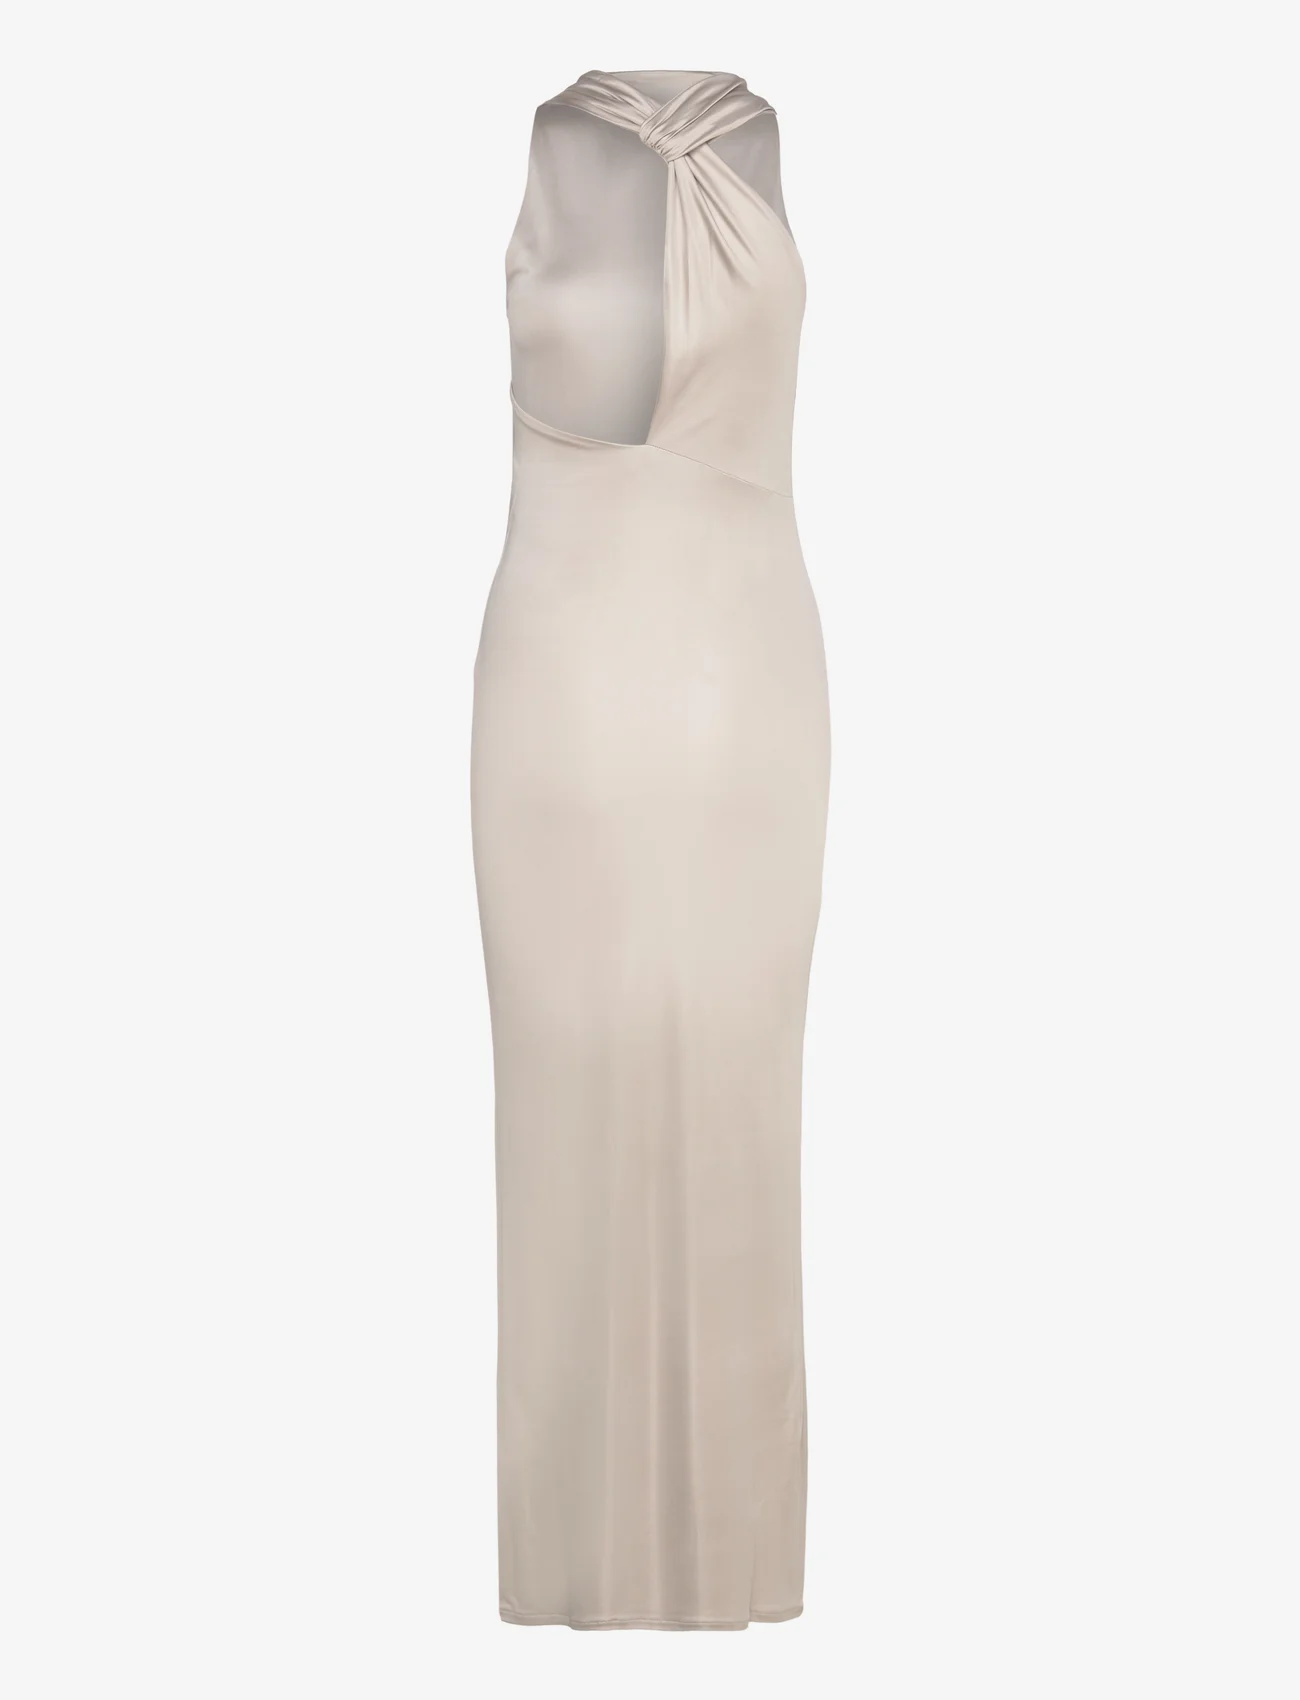 Calvin Klein - JERSEY HALTER NECK MAXI  DRESS - feestelijke kleding voor outlet-prijzen - sand pebble - 1